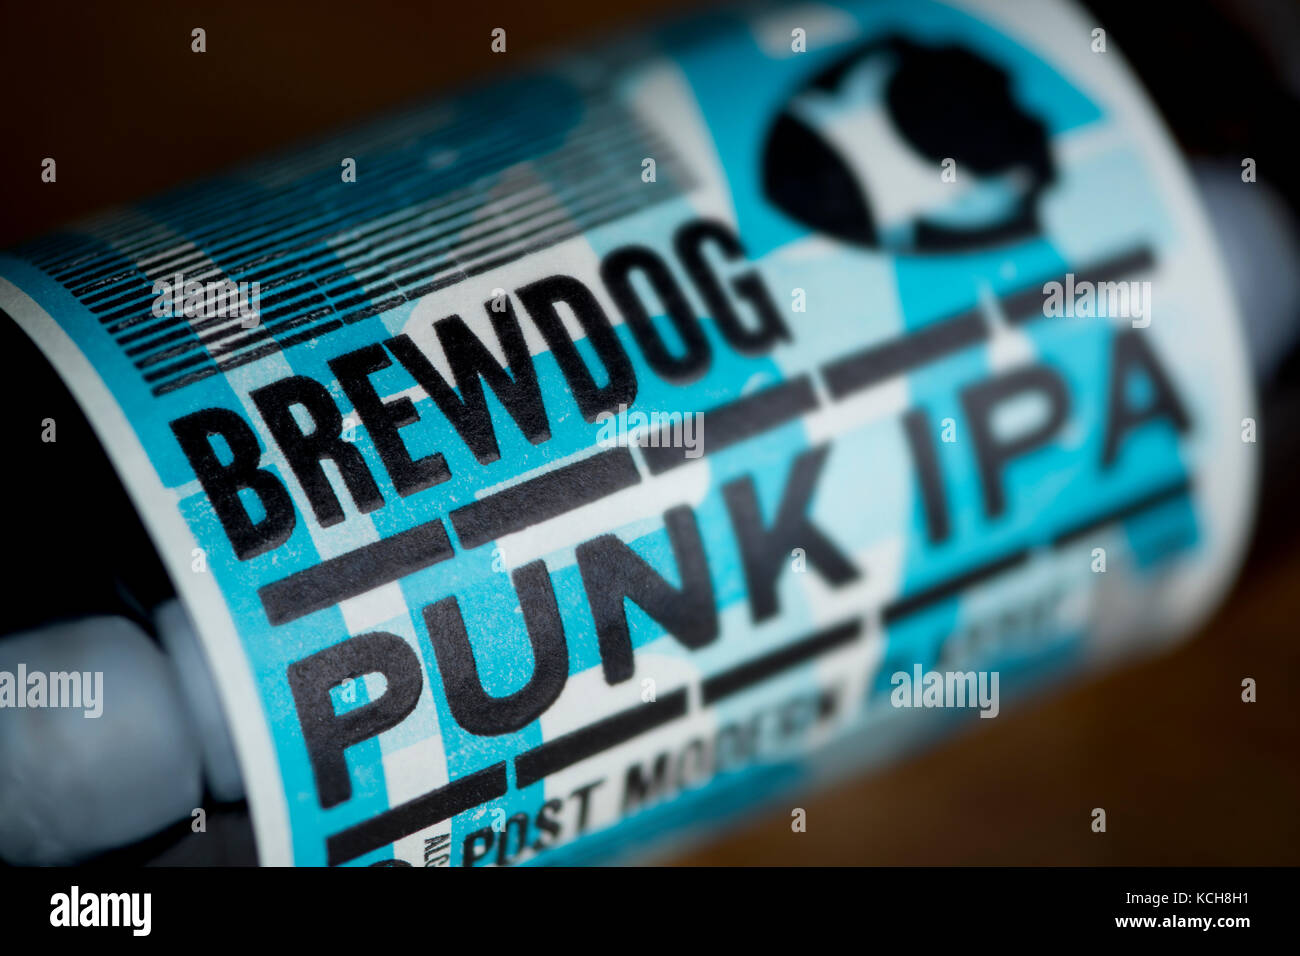 Un gros plan d'une bouteille de Punk IPA brassée par la brasserie BrewDog base écossais (usage éditorial uniquement). Banque D'Images